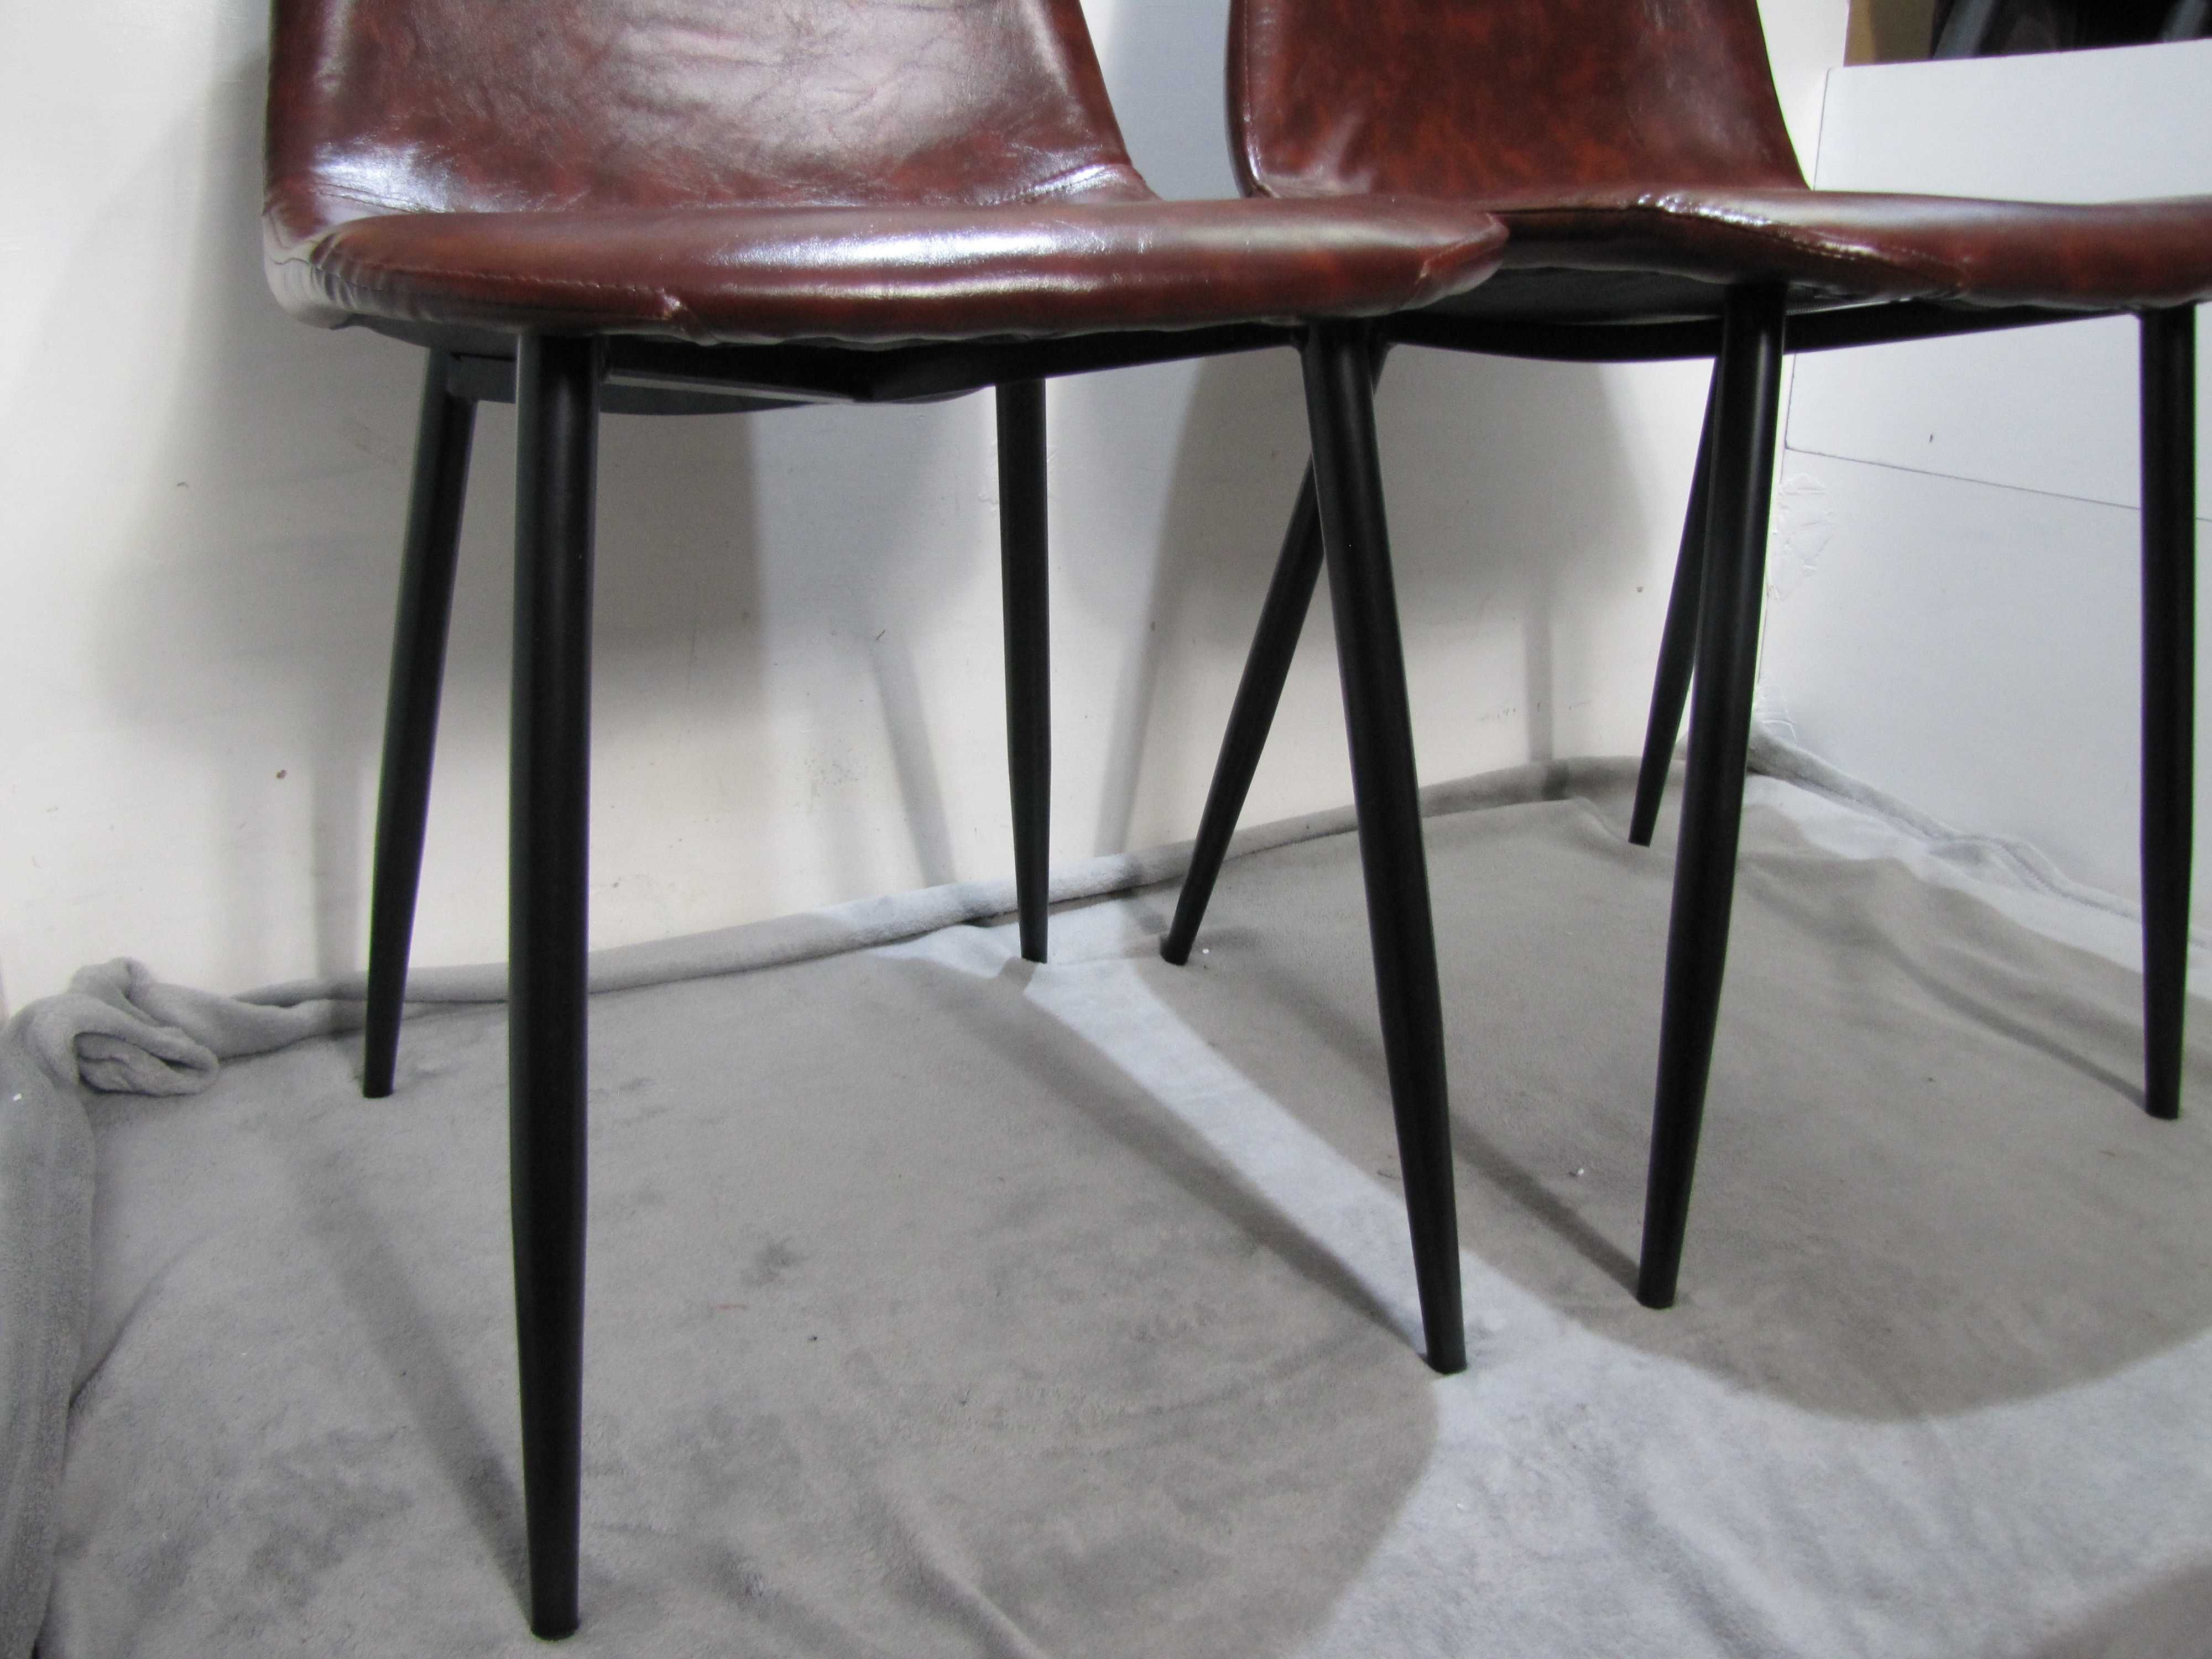 Krzesło tapicerowane skórzane brązowe NOWE styl loft